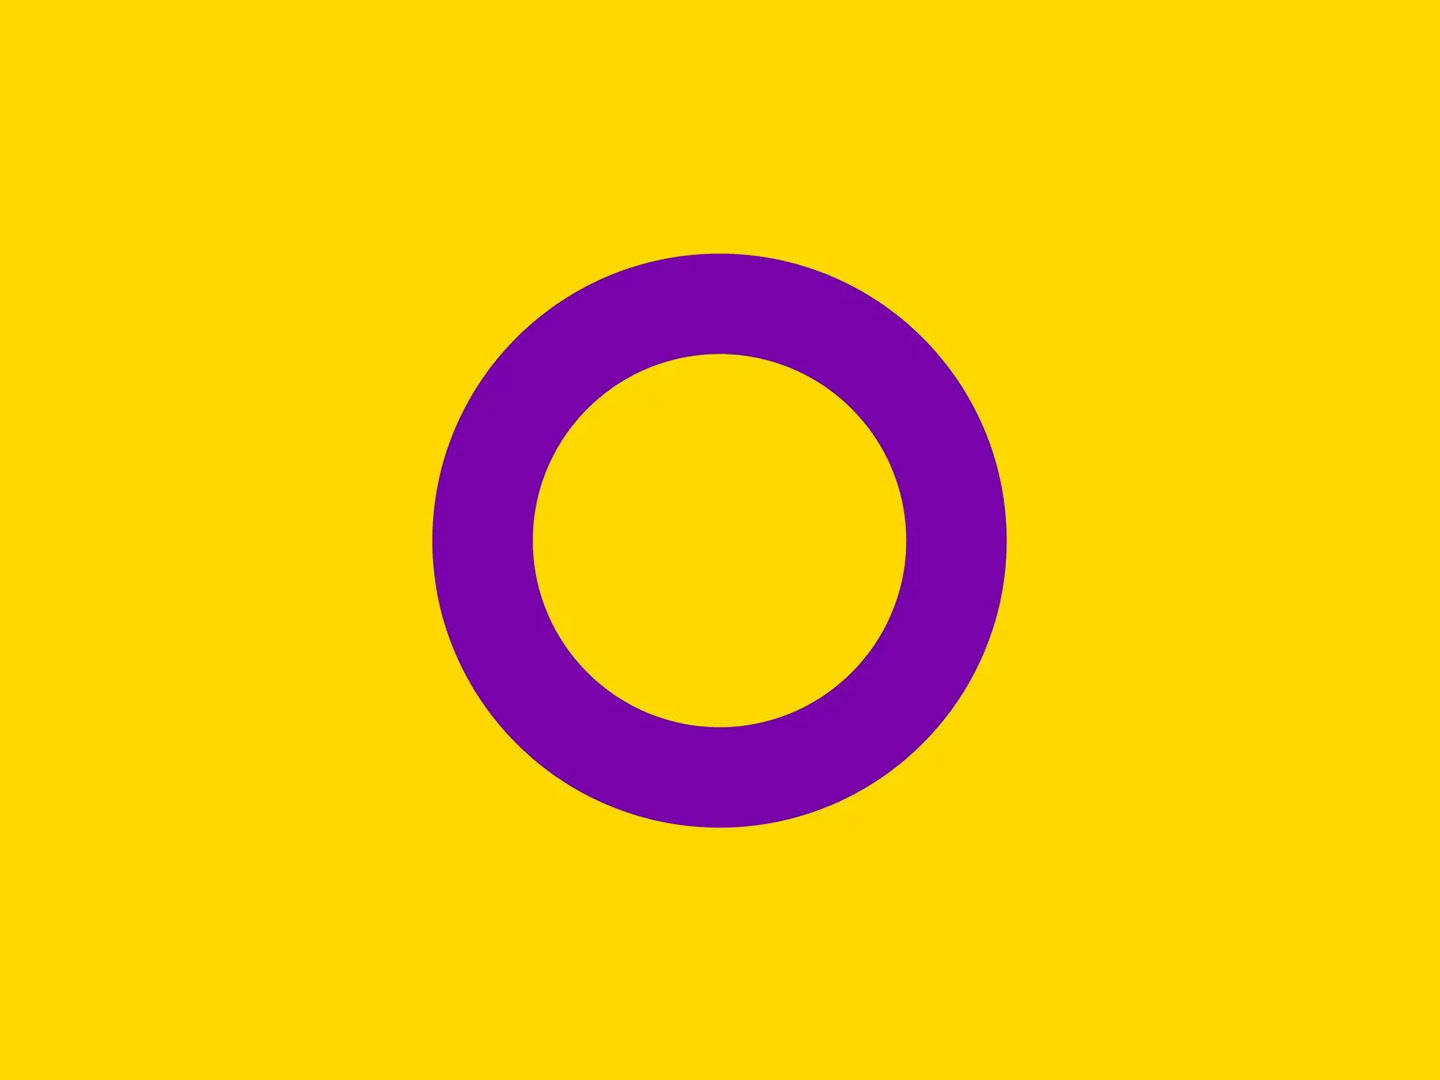 violetti ympyra keltaisella pohjalla